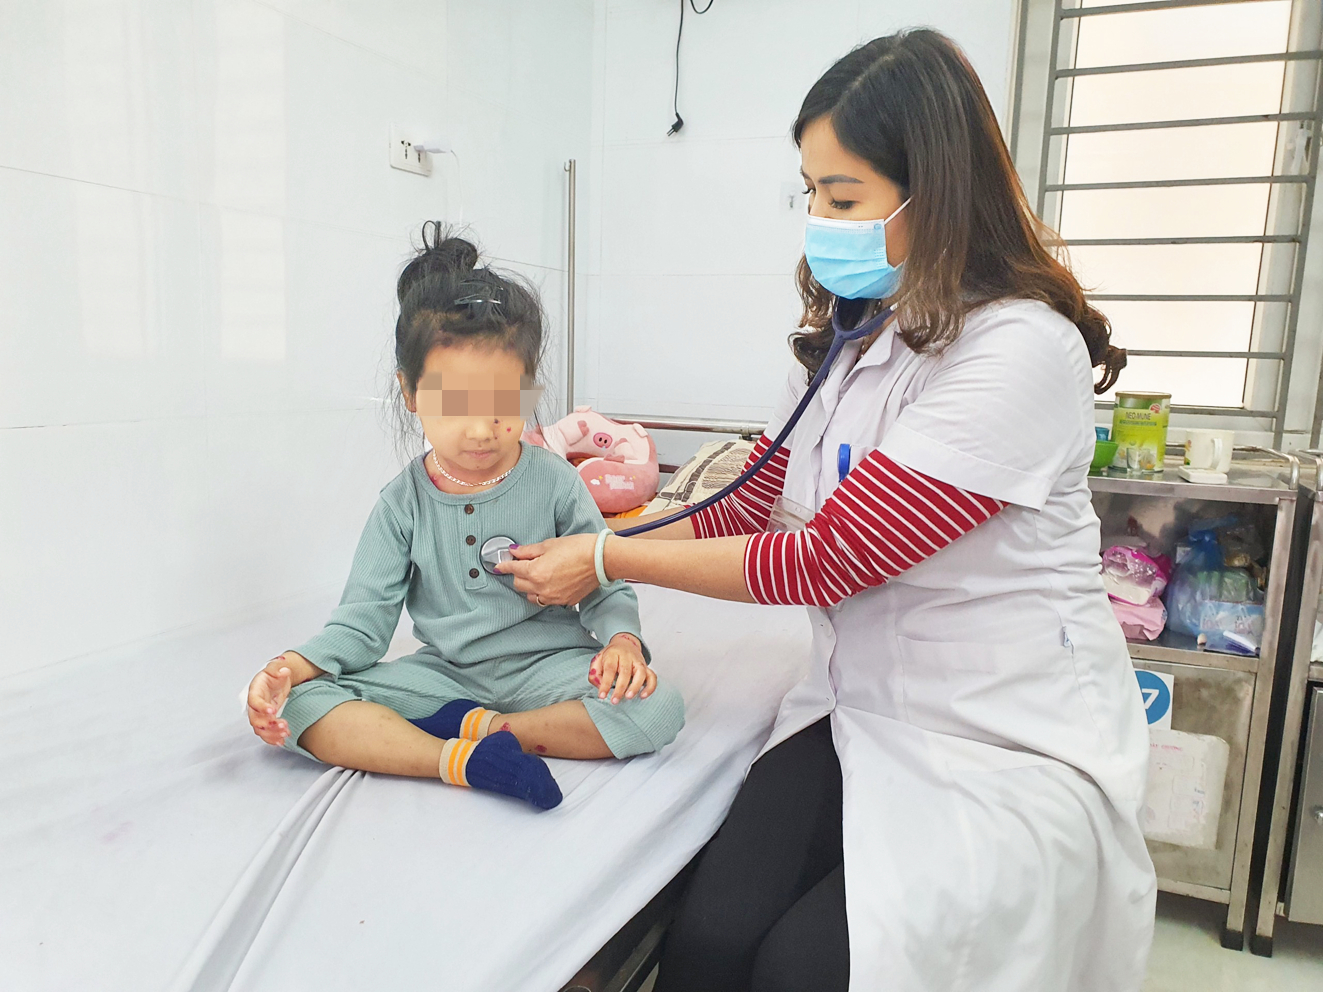 Bác sĩ Trần Thị Kim Anh thăm khám cho bệnh nhi thủy đậu đang điều trị tại Khoa Nhiệt đới  (Bệnh viện Đa khoa Hà Đông) - ẢNH: H.A